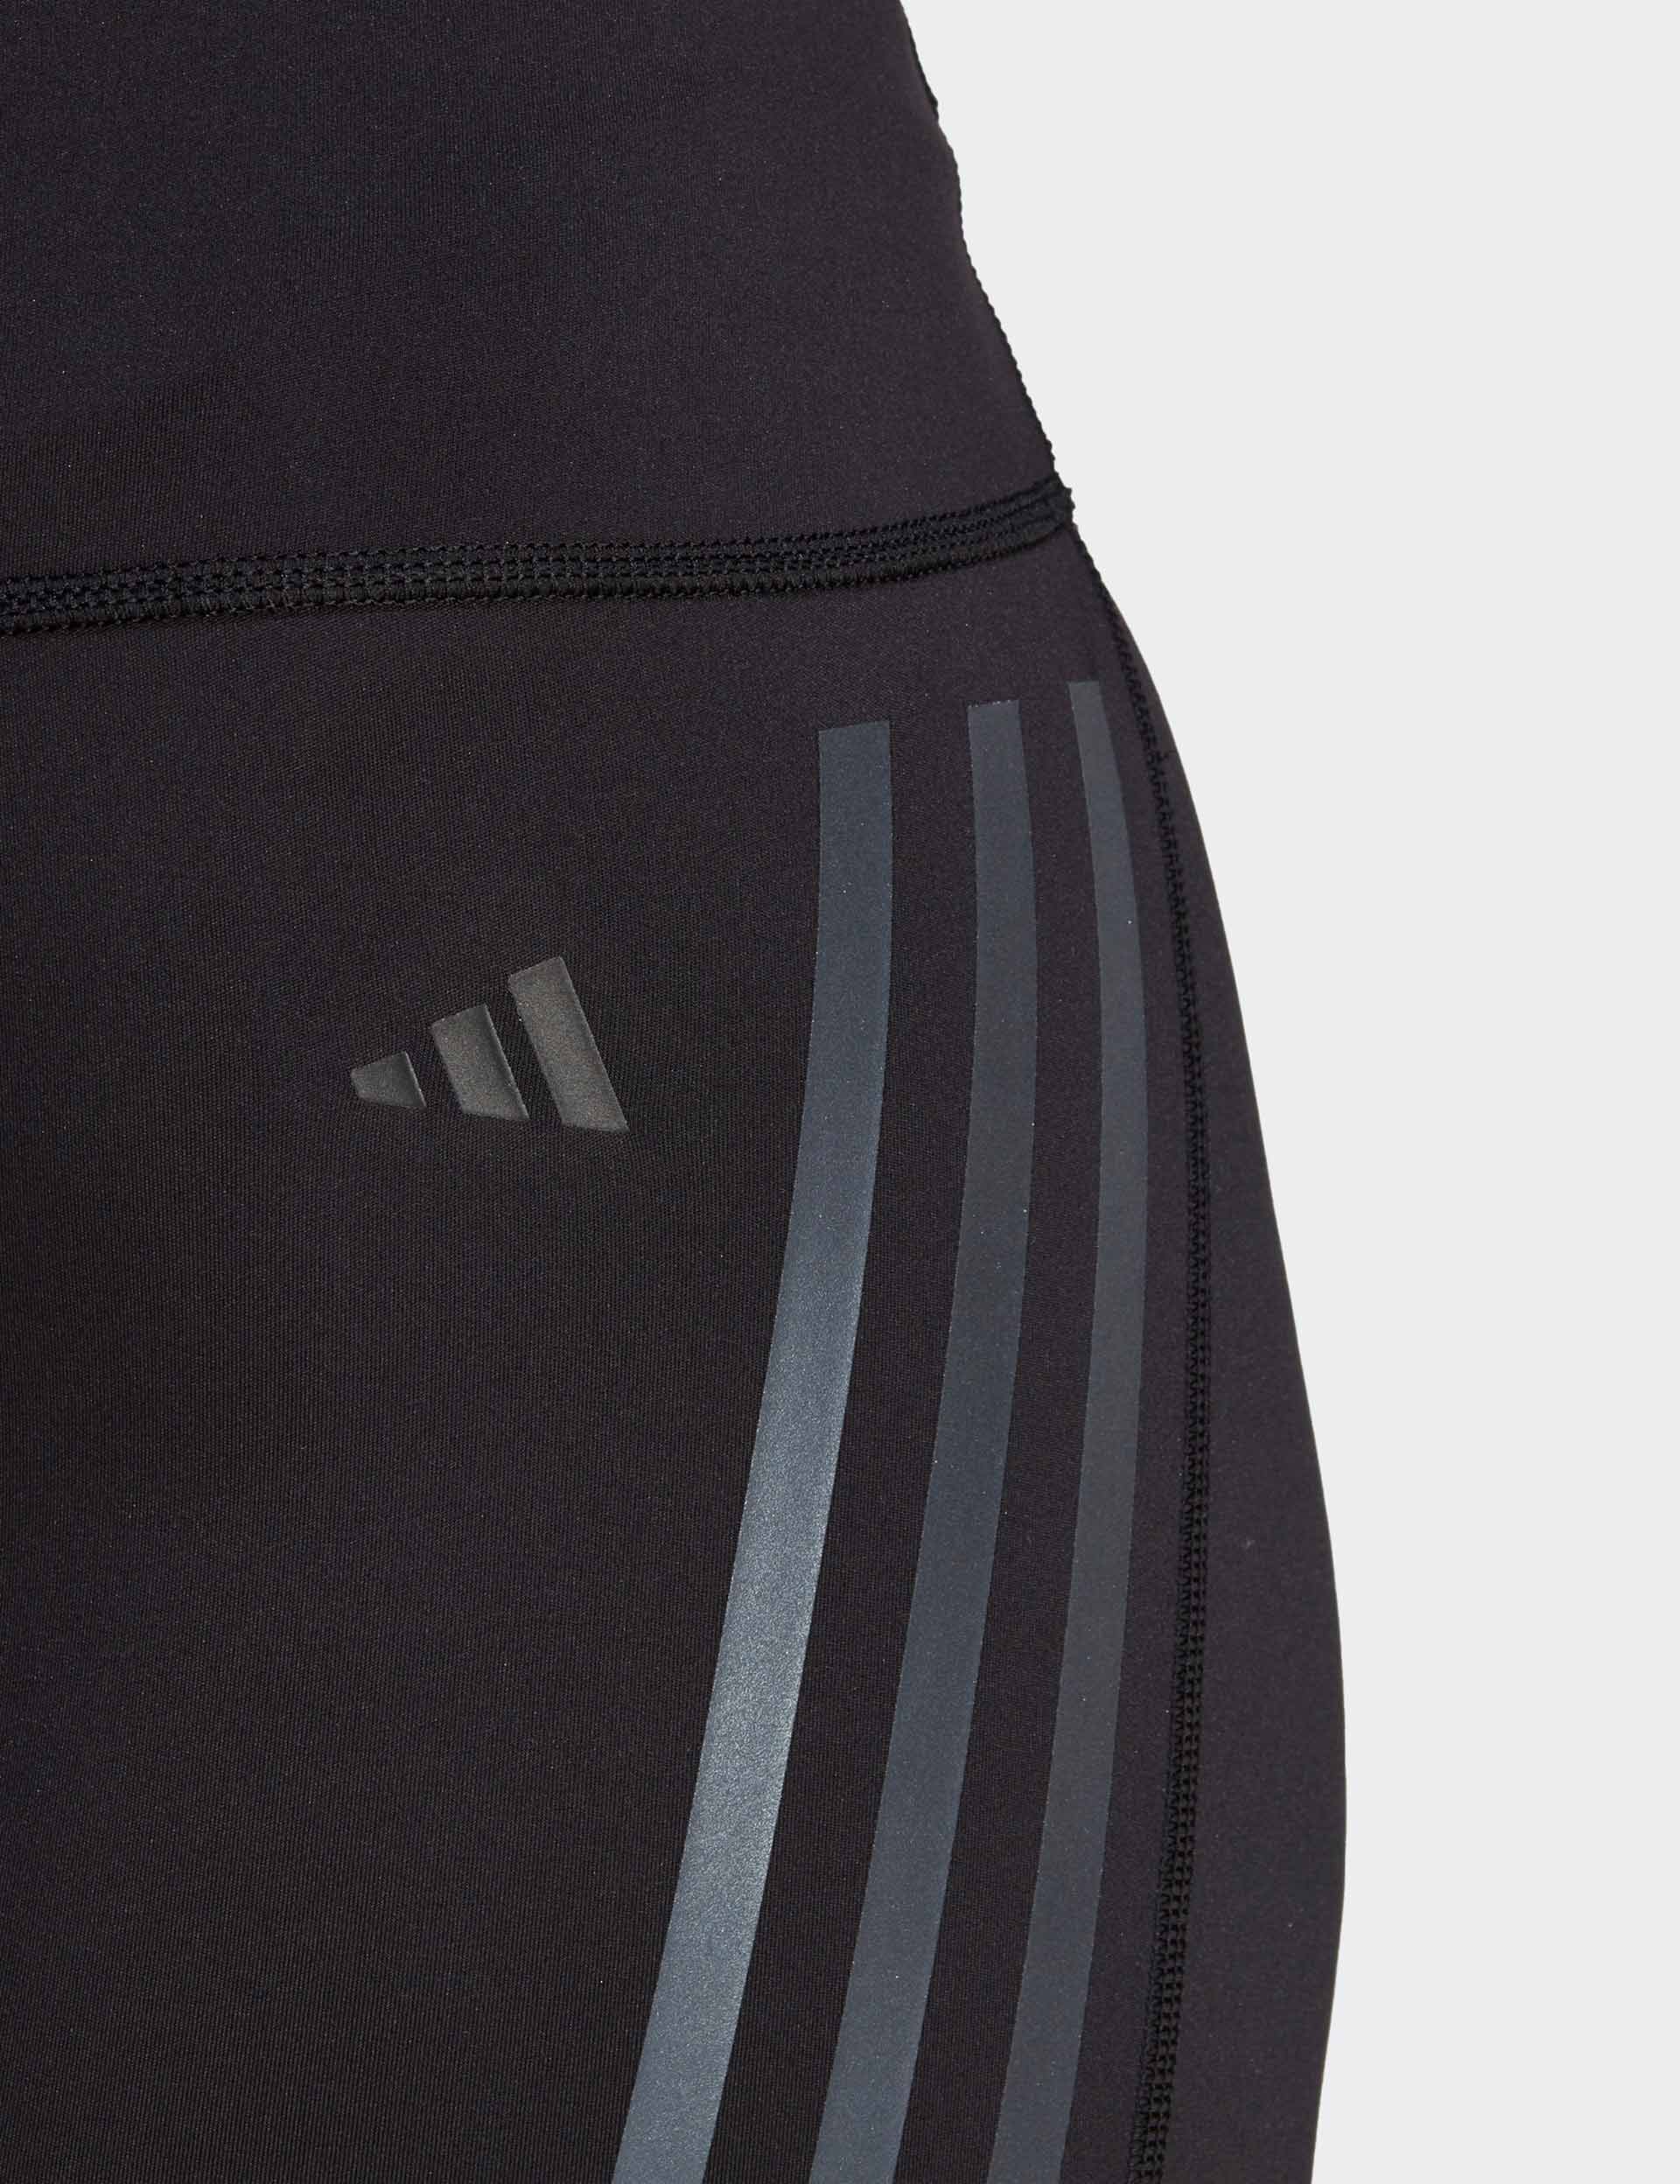 adidas, DailyRun 3-Stripes 5 Inch Shorts - Black